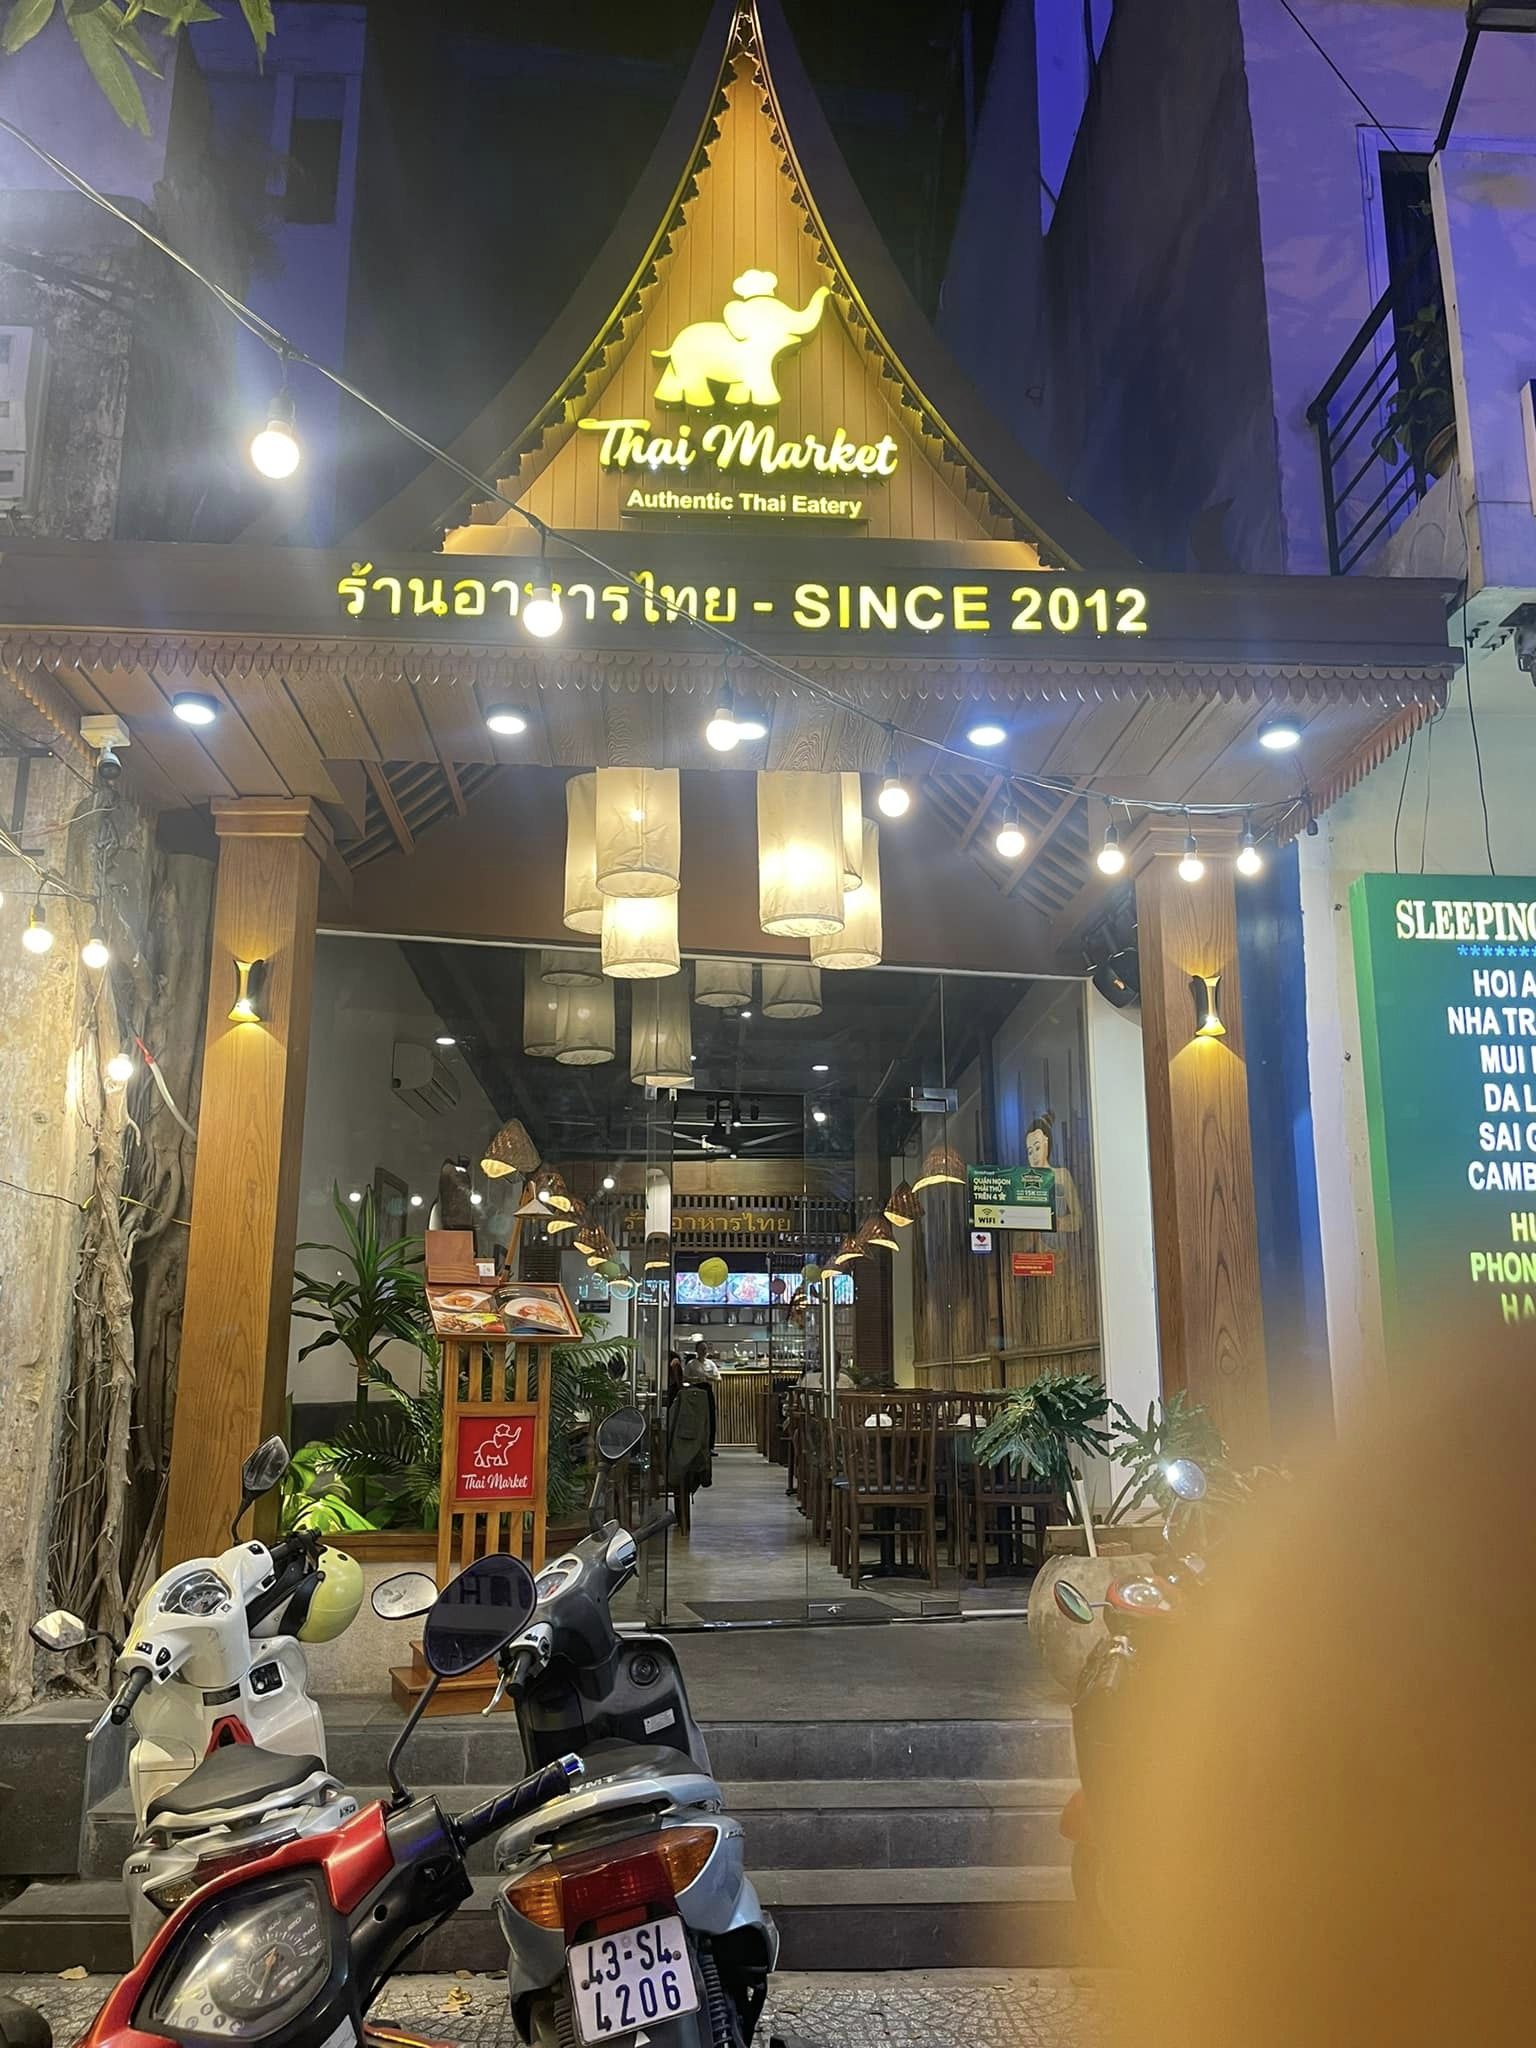 Vẻ ngoài của Thái Market vô cùng bắt mắt thực khách